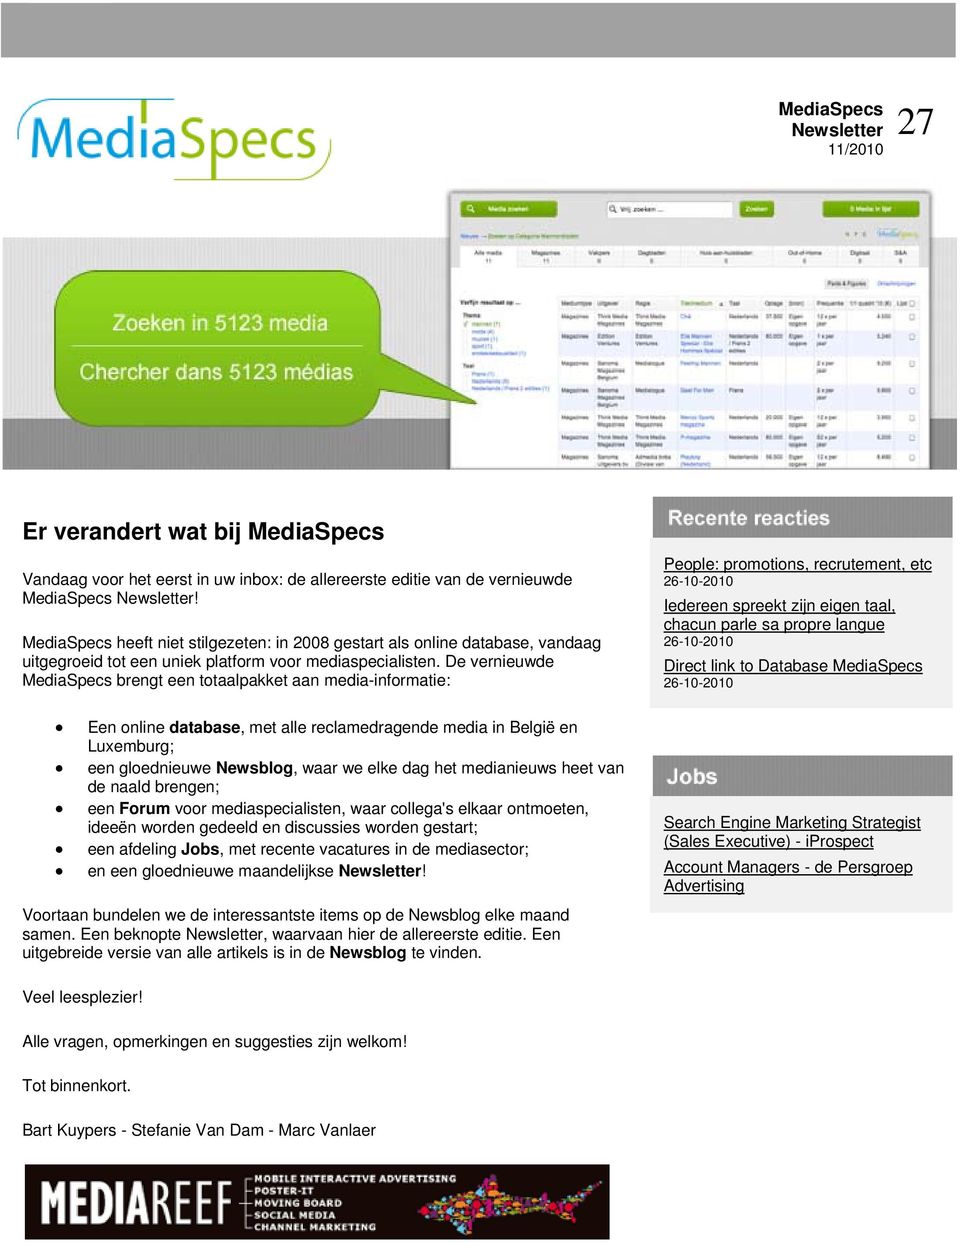 De vernieuwde MediaSpecs brengt een totaalpakket aan media-informatie: Een online database, met alle reclamedragende media in België en Luxemburg; een gloednieuwe Newsblog, waar we elke dag het